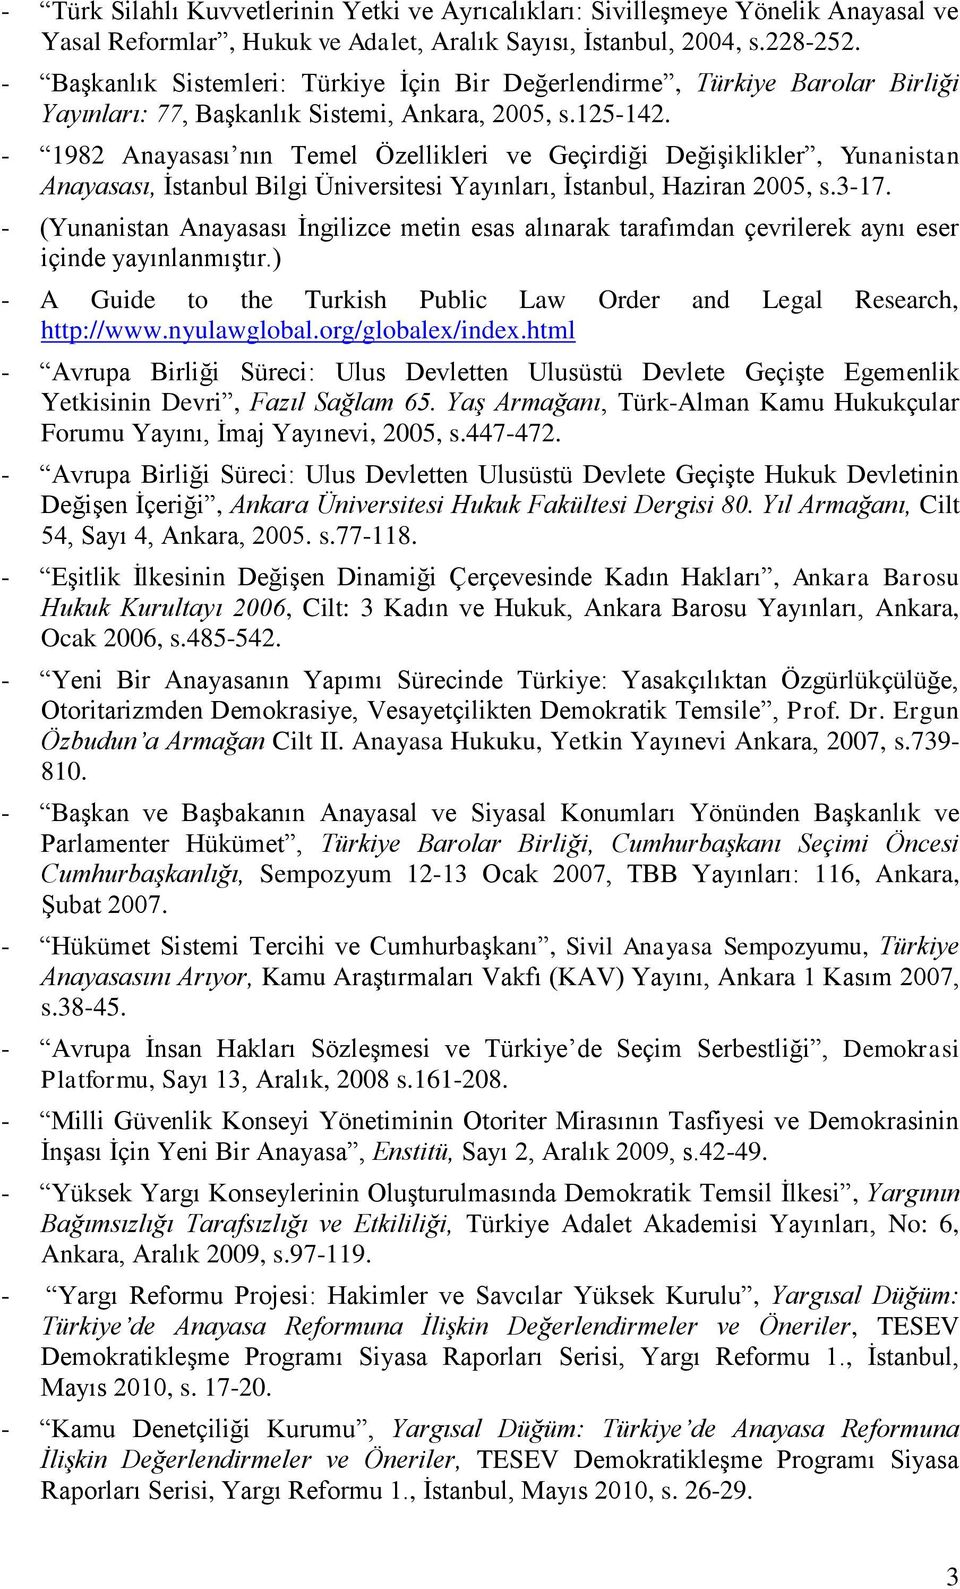 - 1982 Anayasası nın Temel Özellikleri ve Geçirdiği Değişiklikler, Yunanistan Anayasası, İstanbul Bilgi Üniversitesi Yayınları, İstanbul, Haziran 2005, s.3-17.